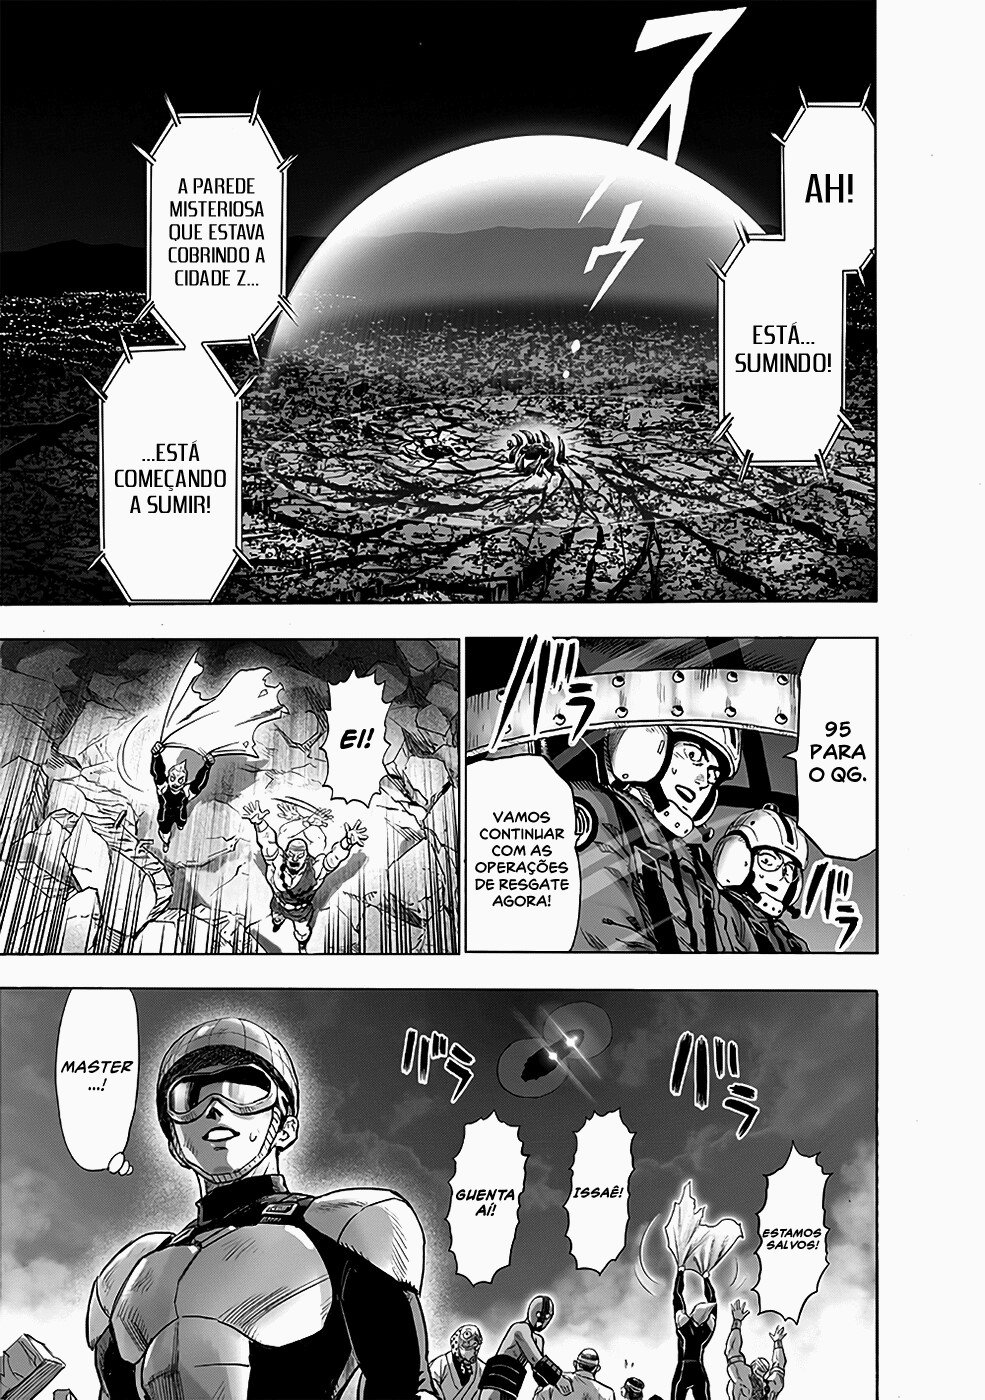 Quem no universo de Naruto seria capaz de derrotar Tatsumaki? - Página 3 0810